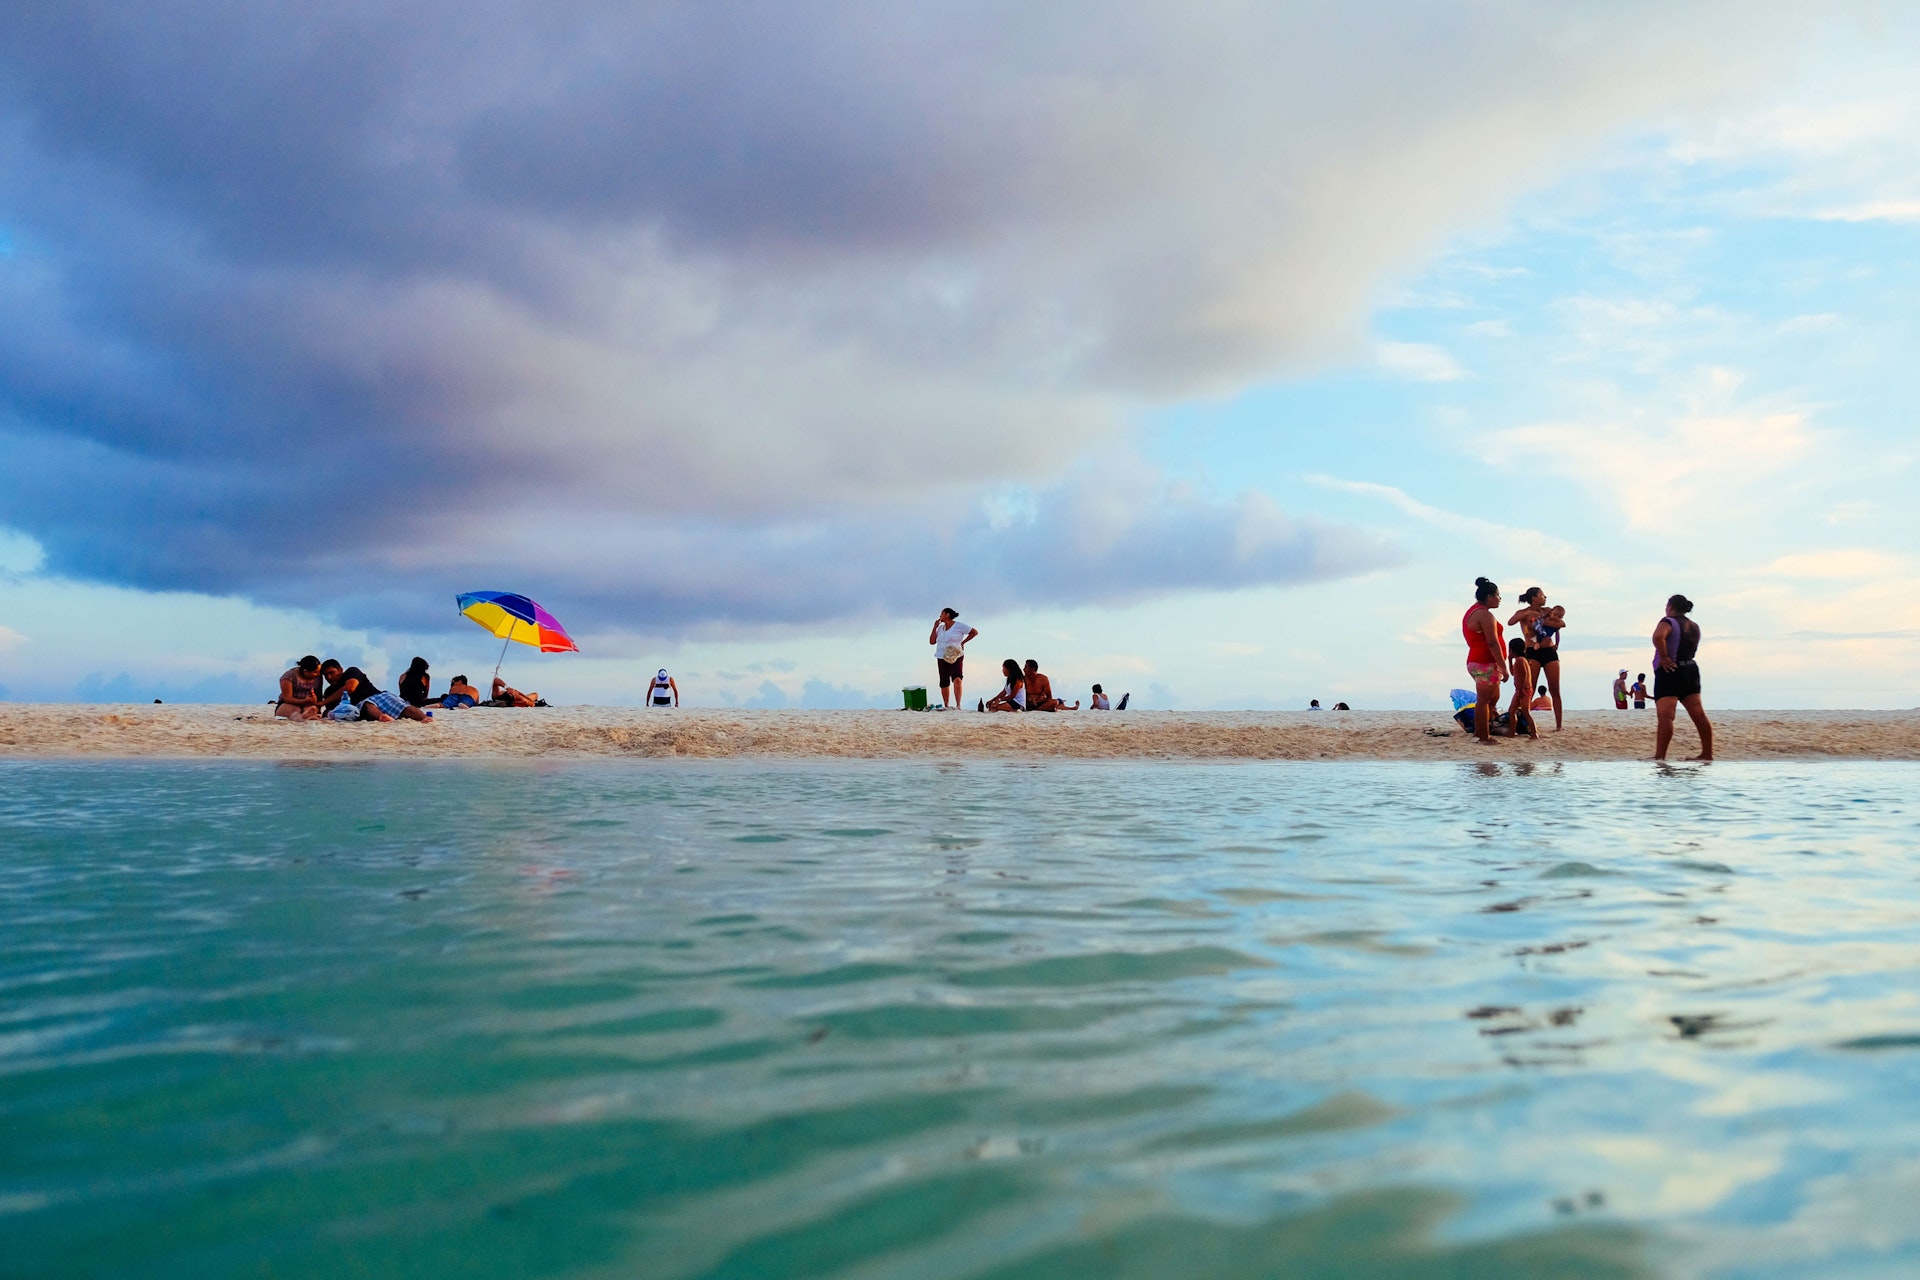  La plej bonaj strandoj en Playa del Carmen por printempa ripozo